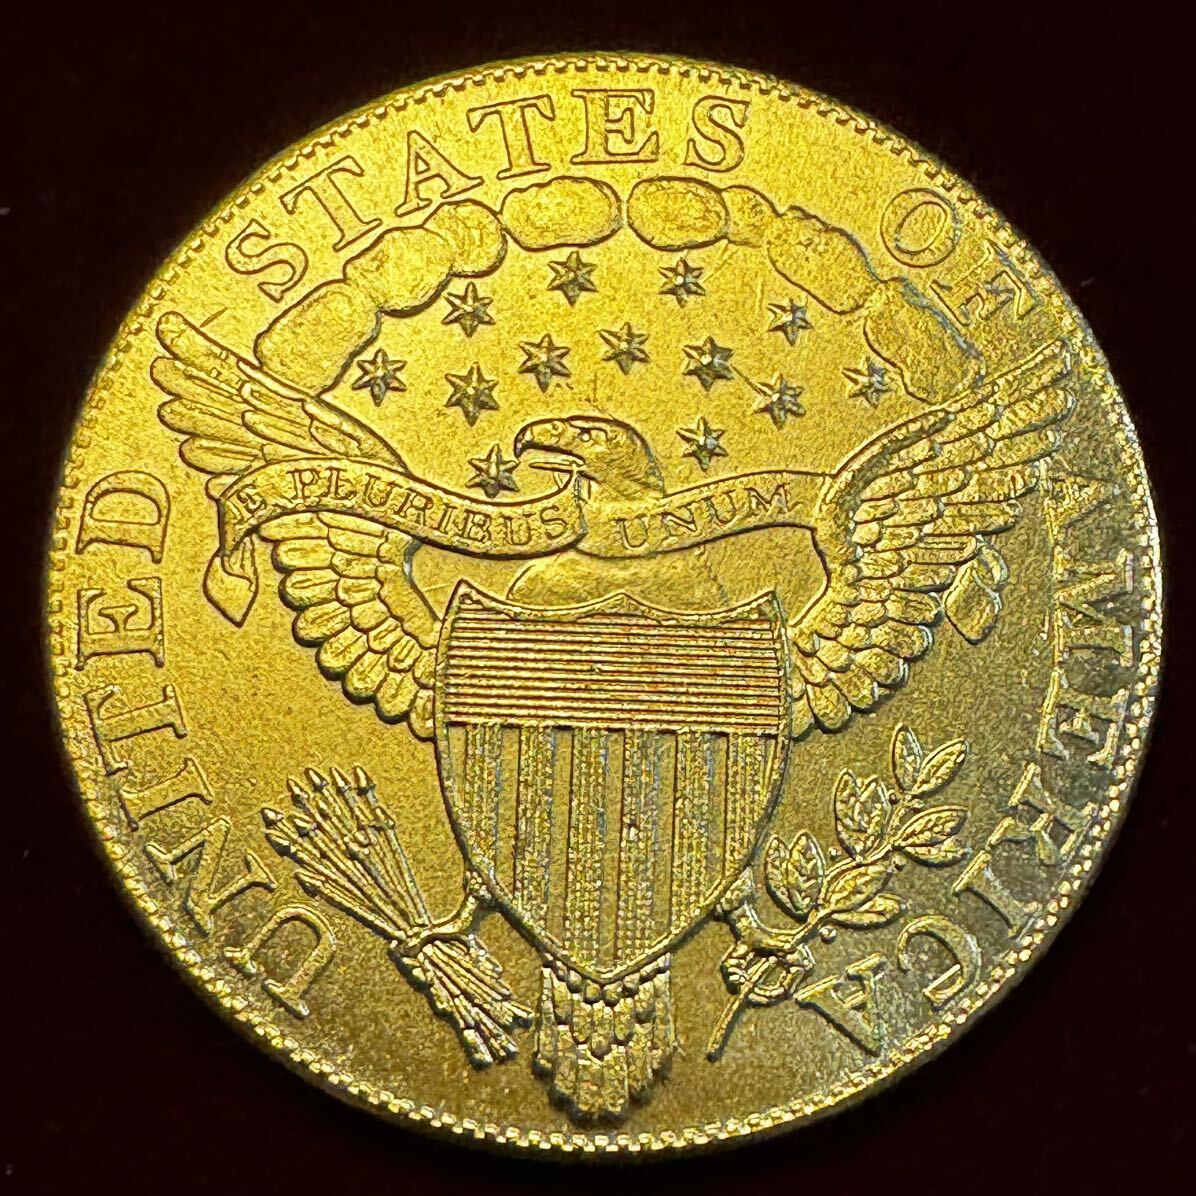 アメリカ 硬貨 古銭 自由の女神 1800年 ハクトウワシ 雲と13の星 独立十三州 盾 矢 オリーブの枝 コイン 金貨 外国古銭 海外硬貨 の画像2